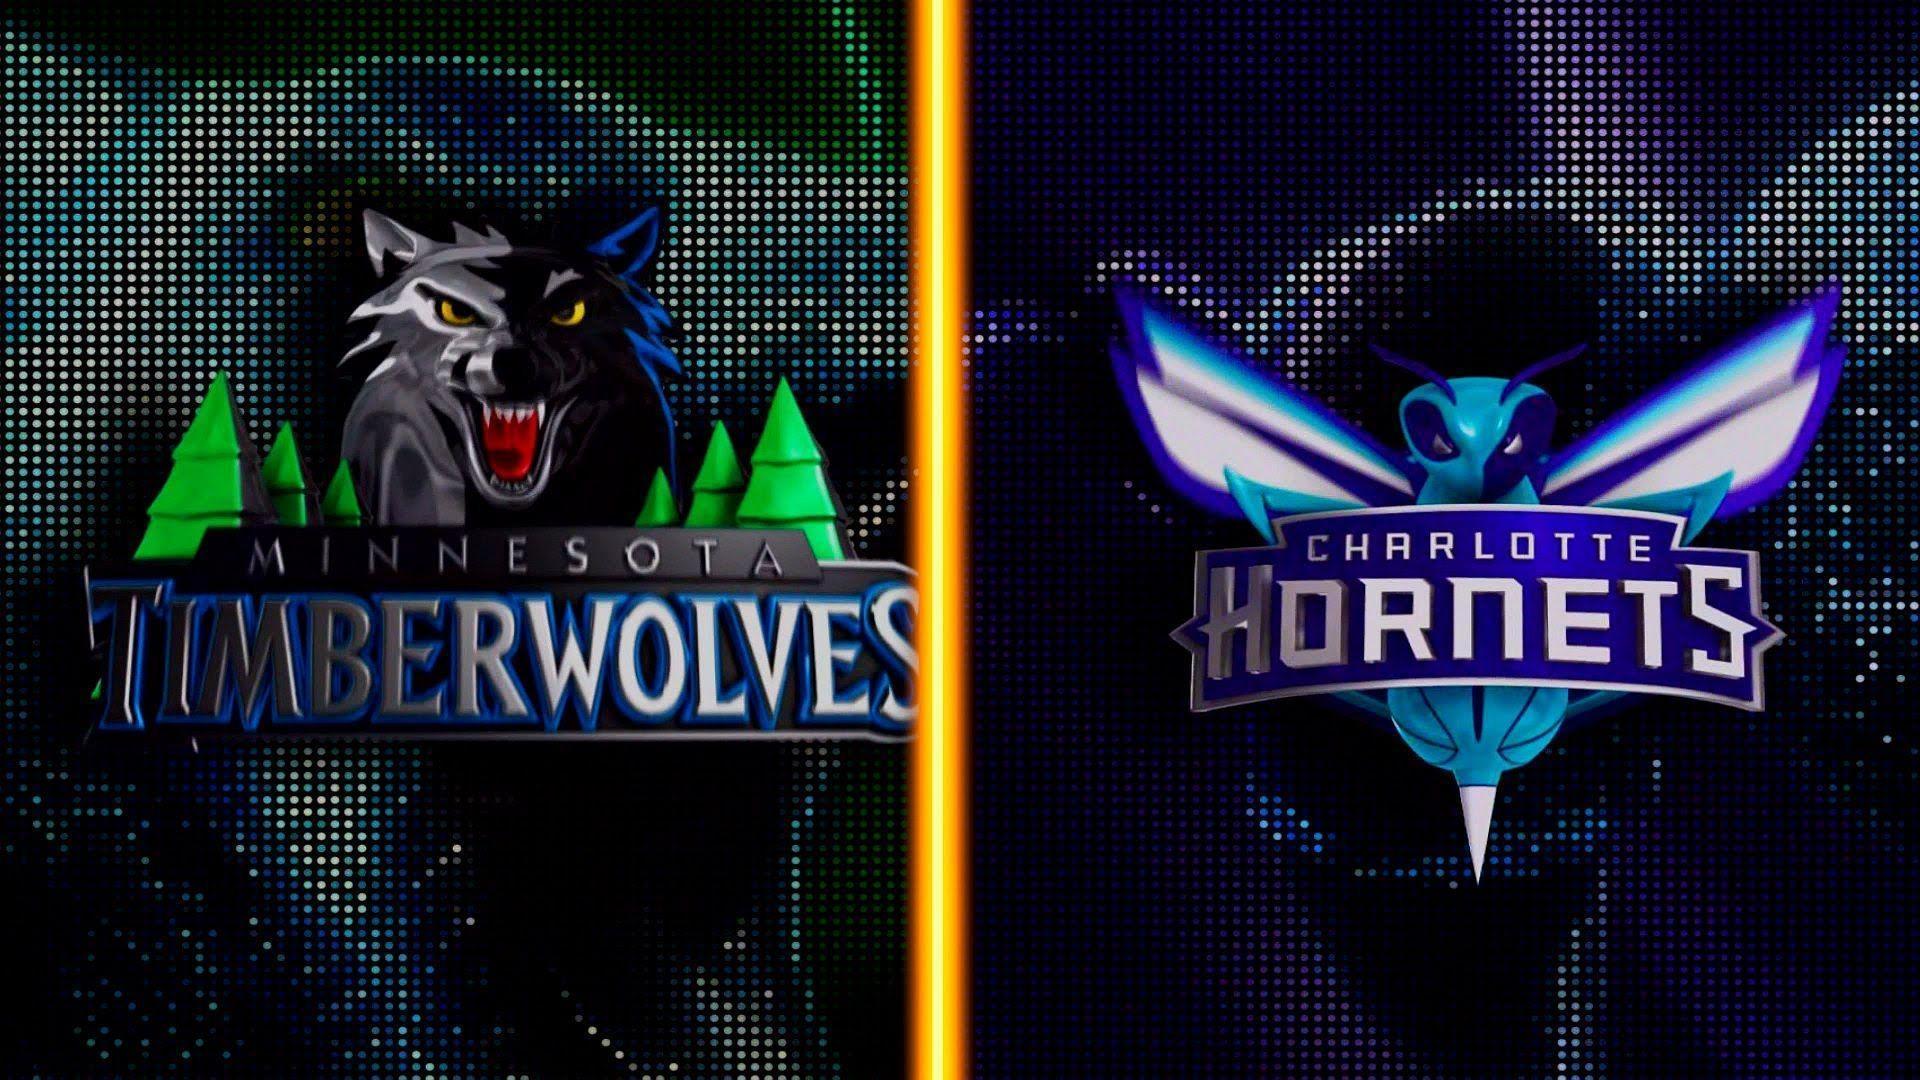 PS4: NBA 2K16 Timberwolves vs. Charlotte Hornets